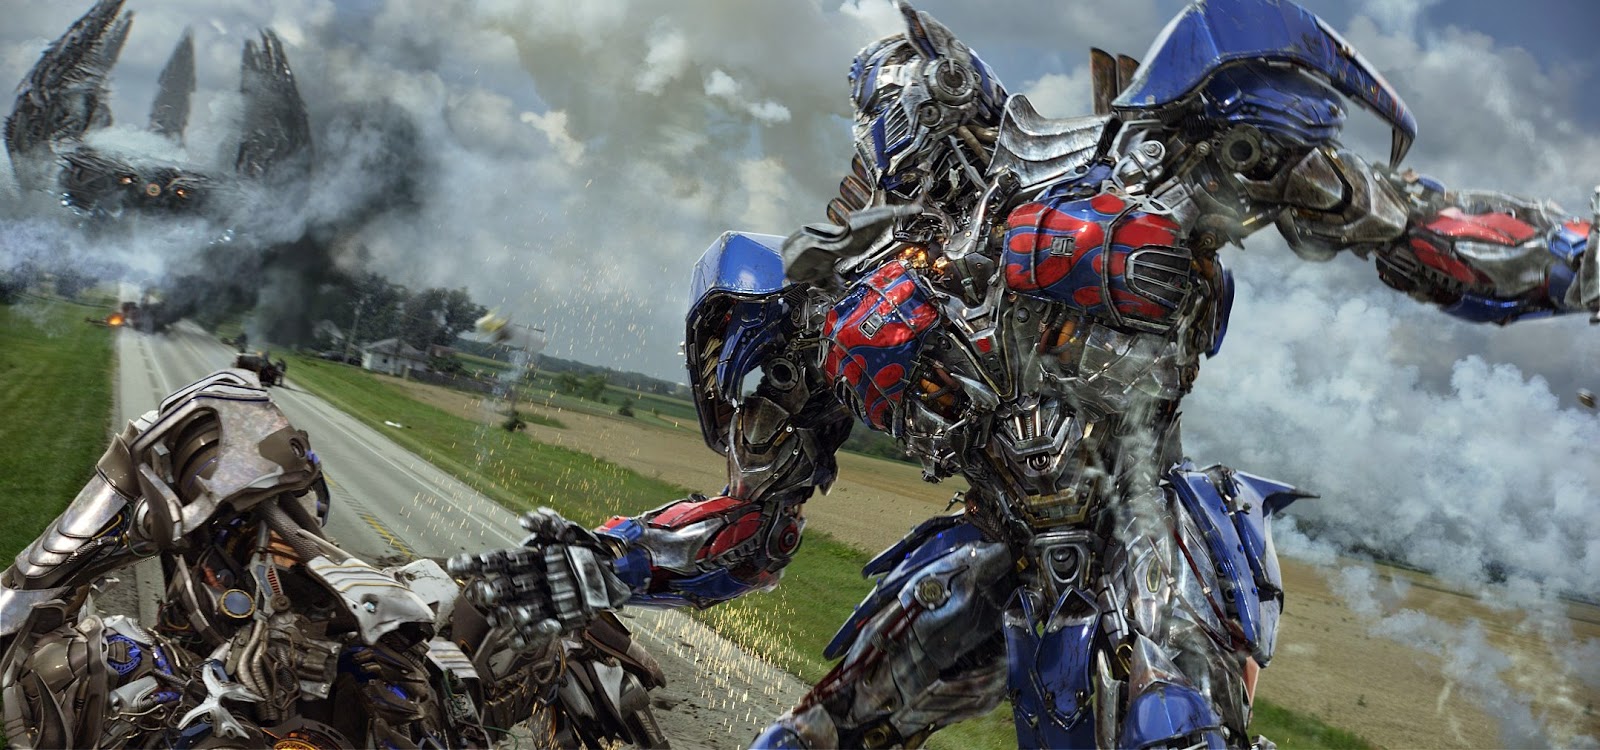 Optimus em campo, batalha de robôs, novos carros e artes conceituais inéditas de Transformers: A Era da Extinção